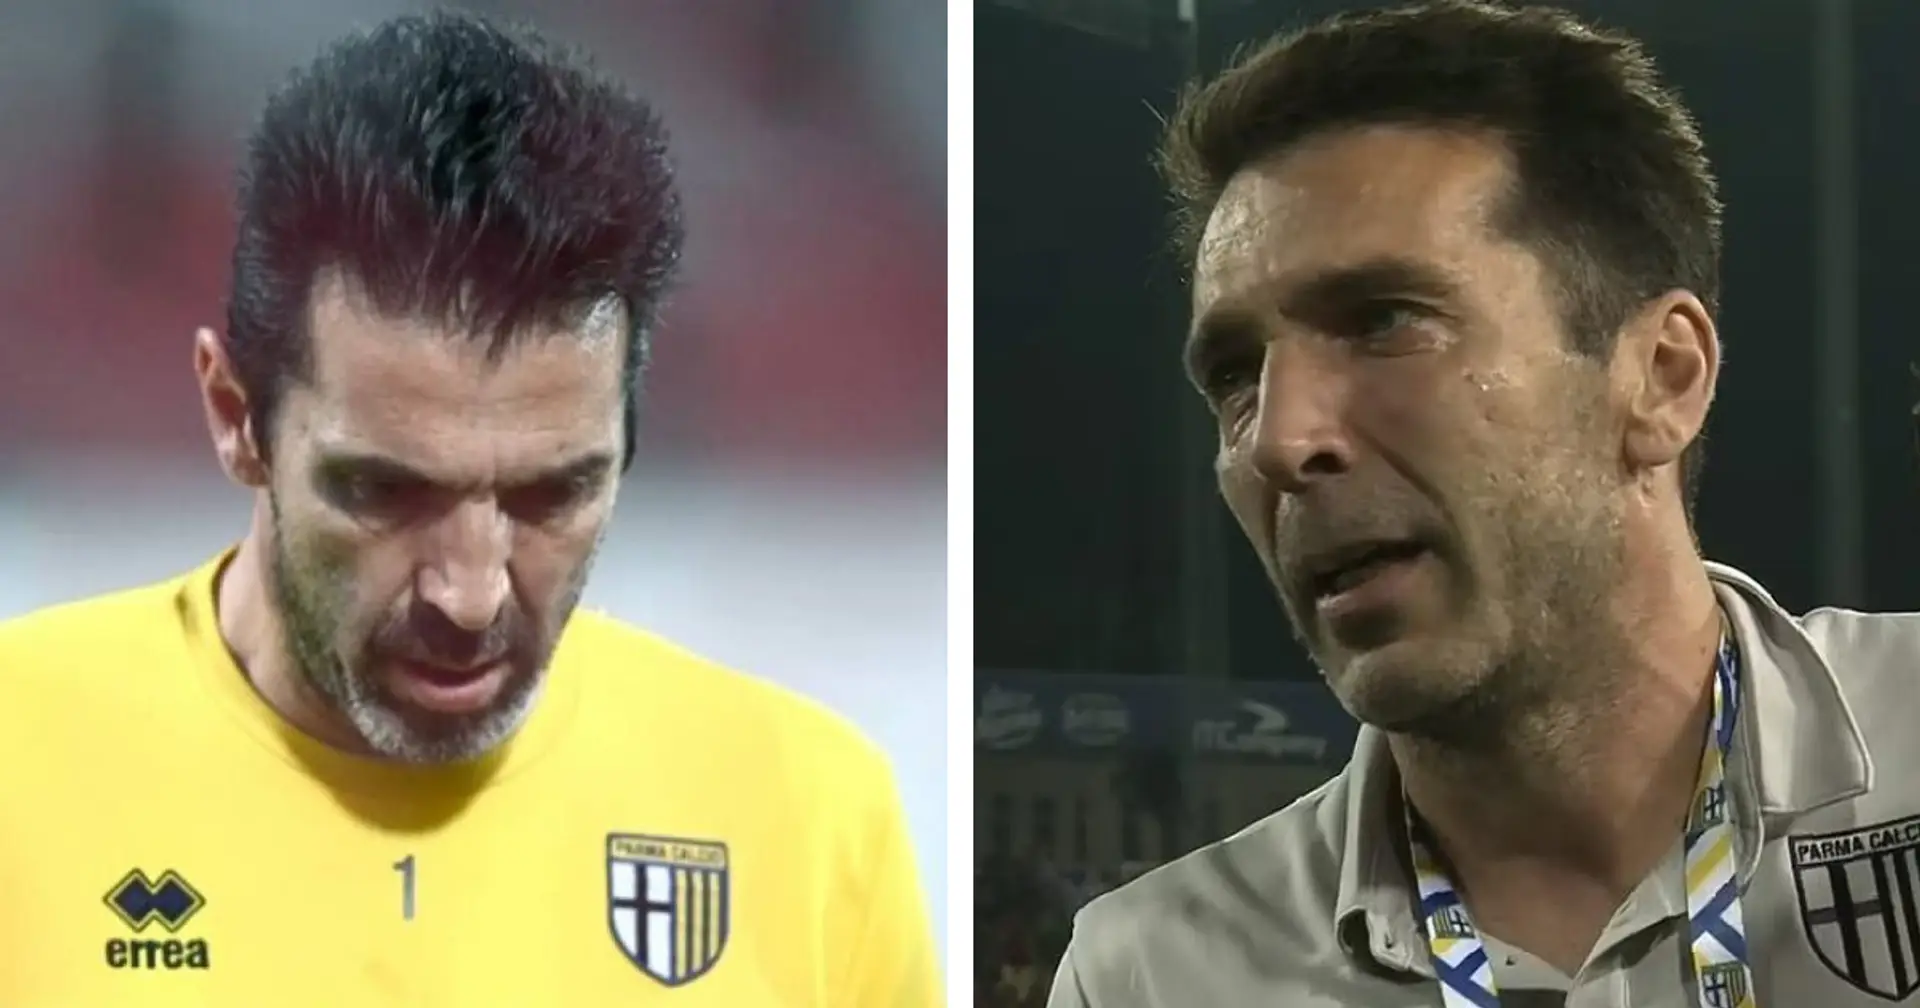 È arrivato il momento del ritiro per la leggenda della Juventus Gigi Buffon? Ore decisive per il futuro del portiere